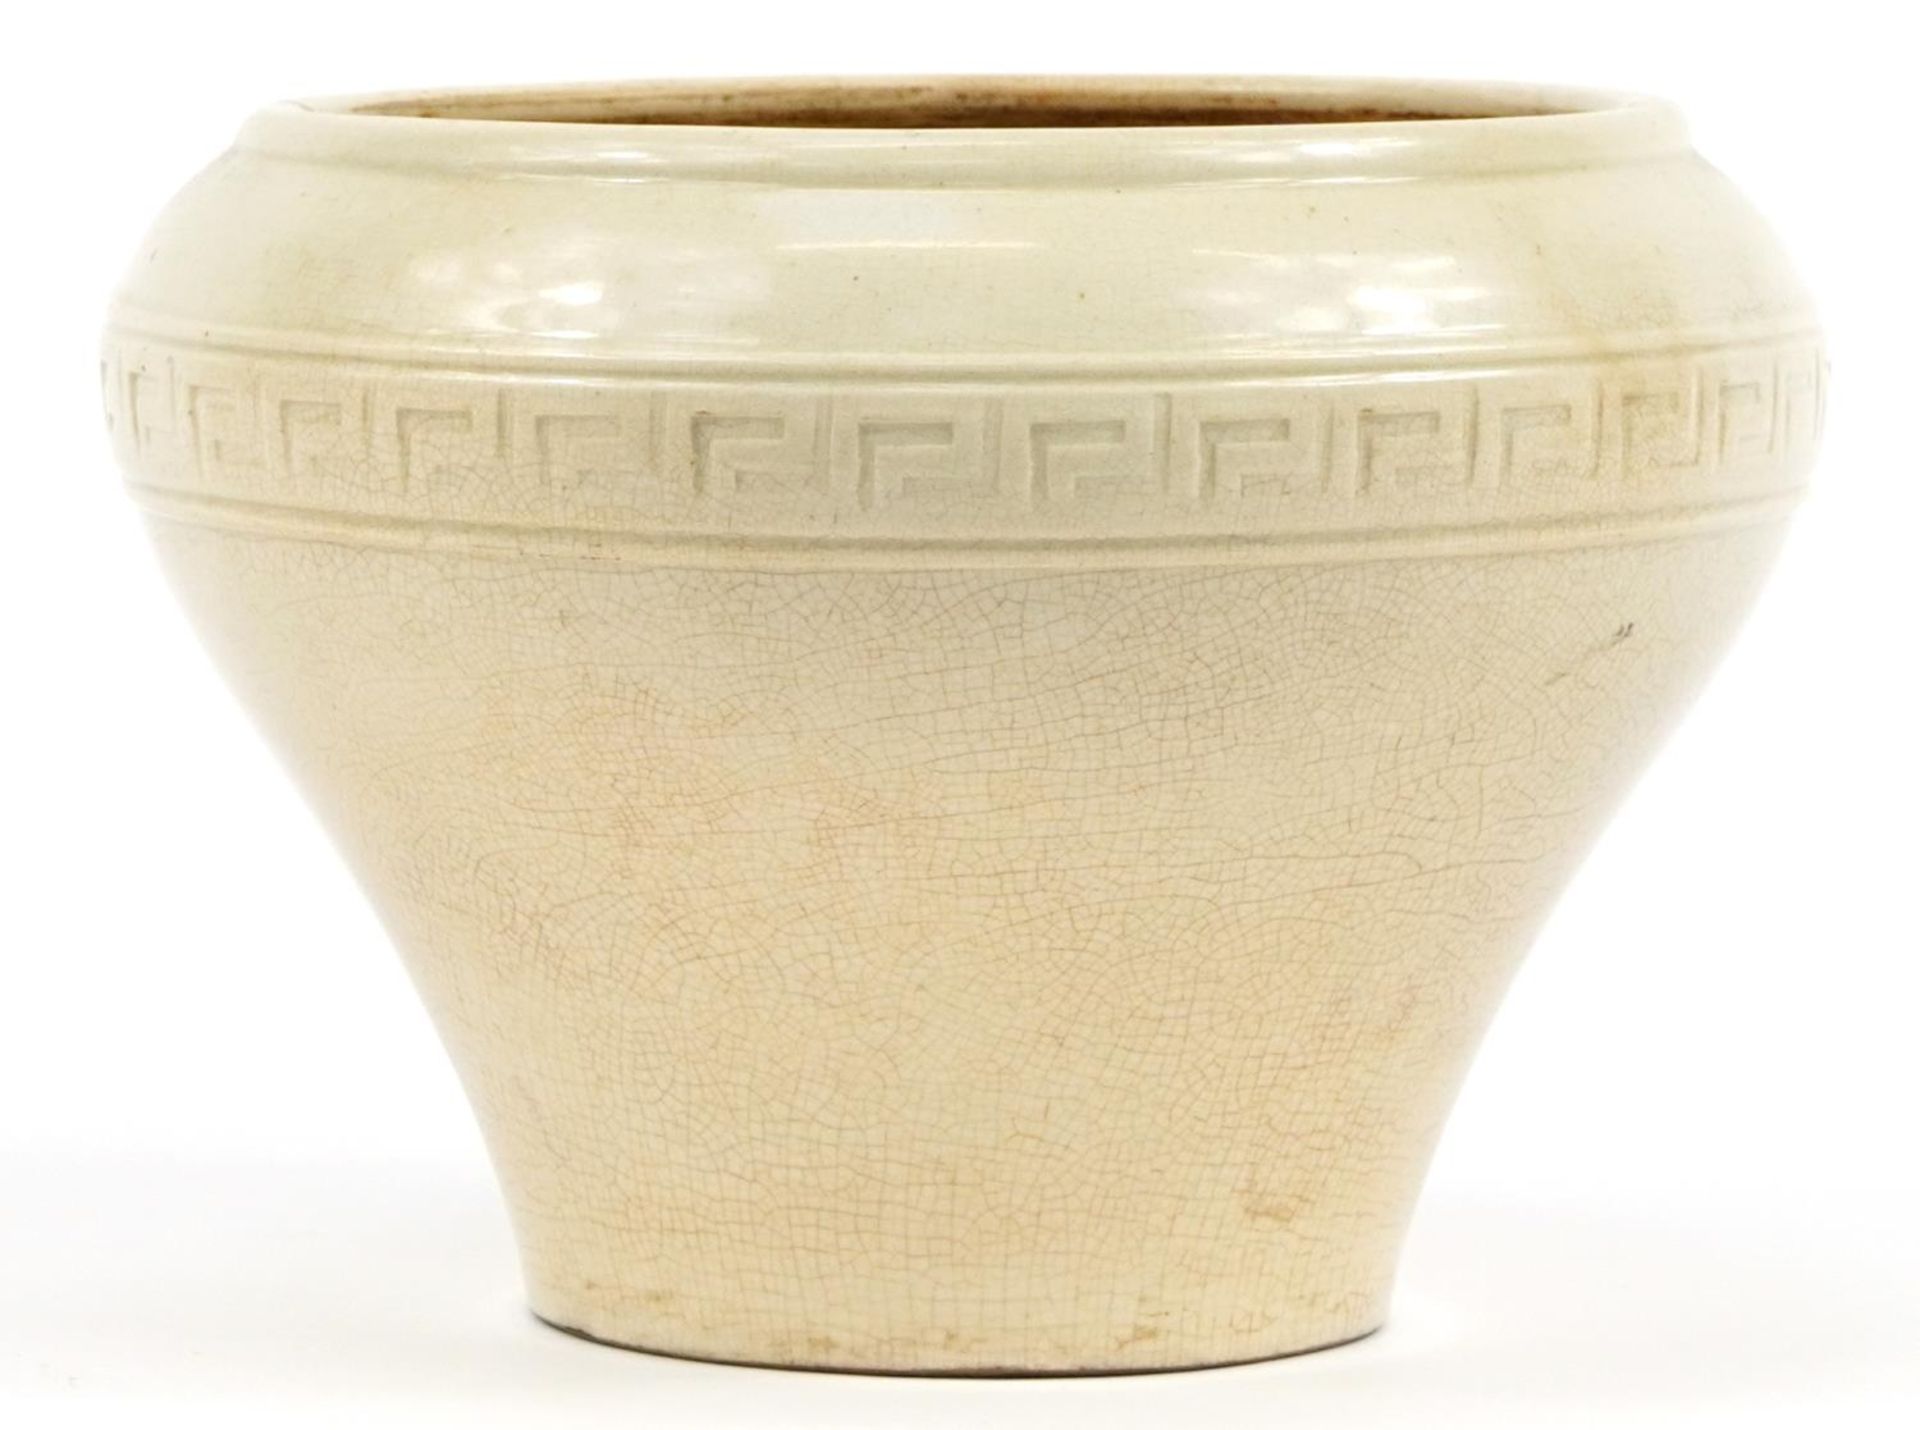 Korean porcelain baluster vase having a white glaze, 20cm high